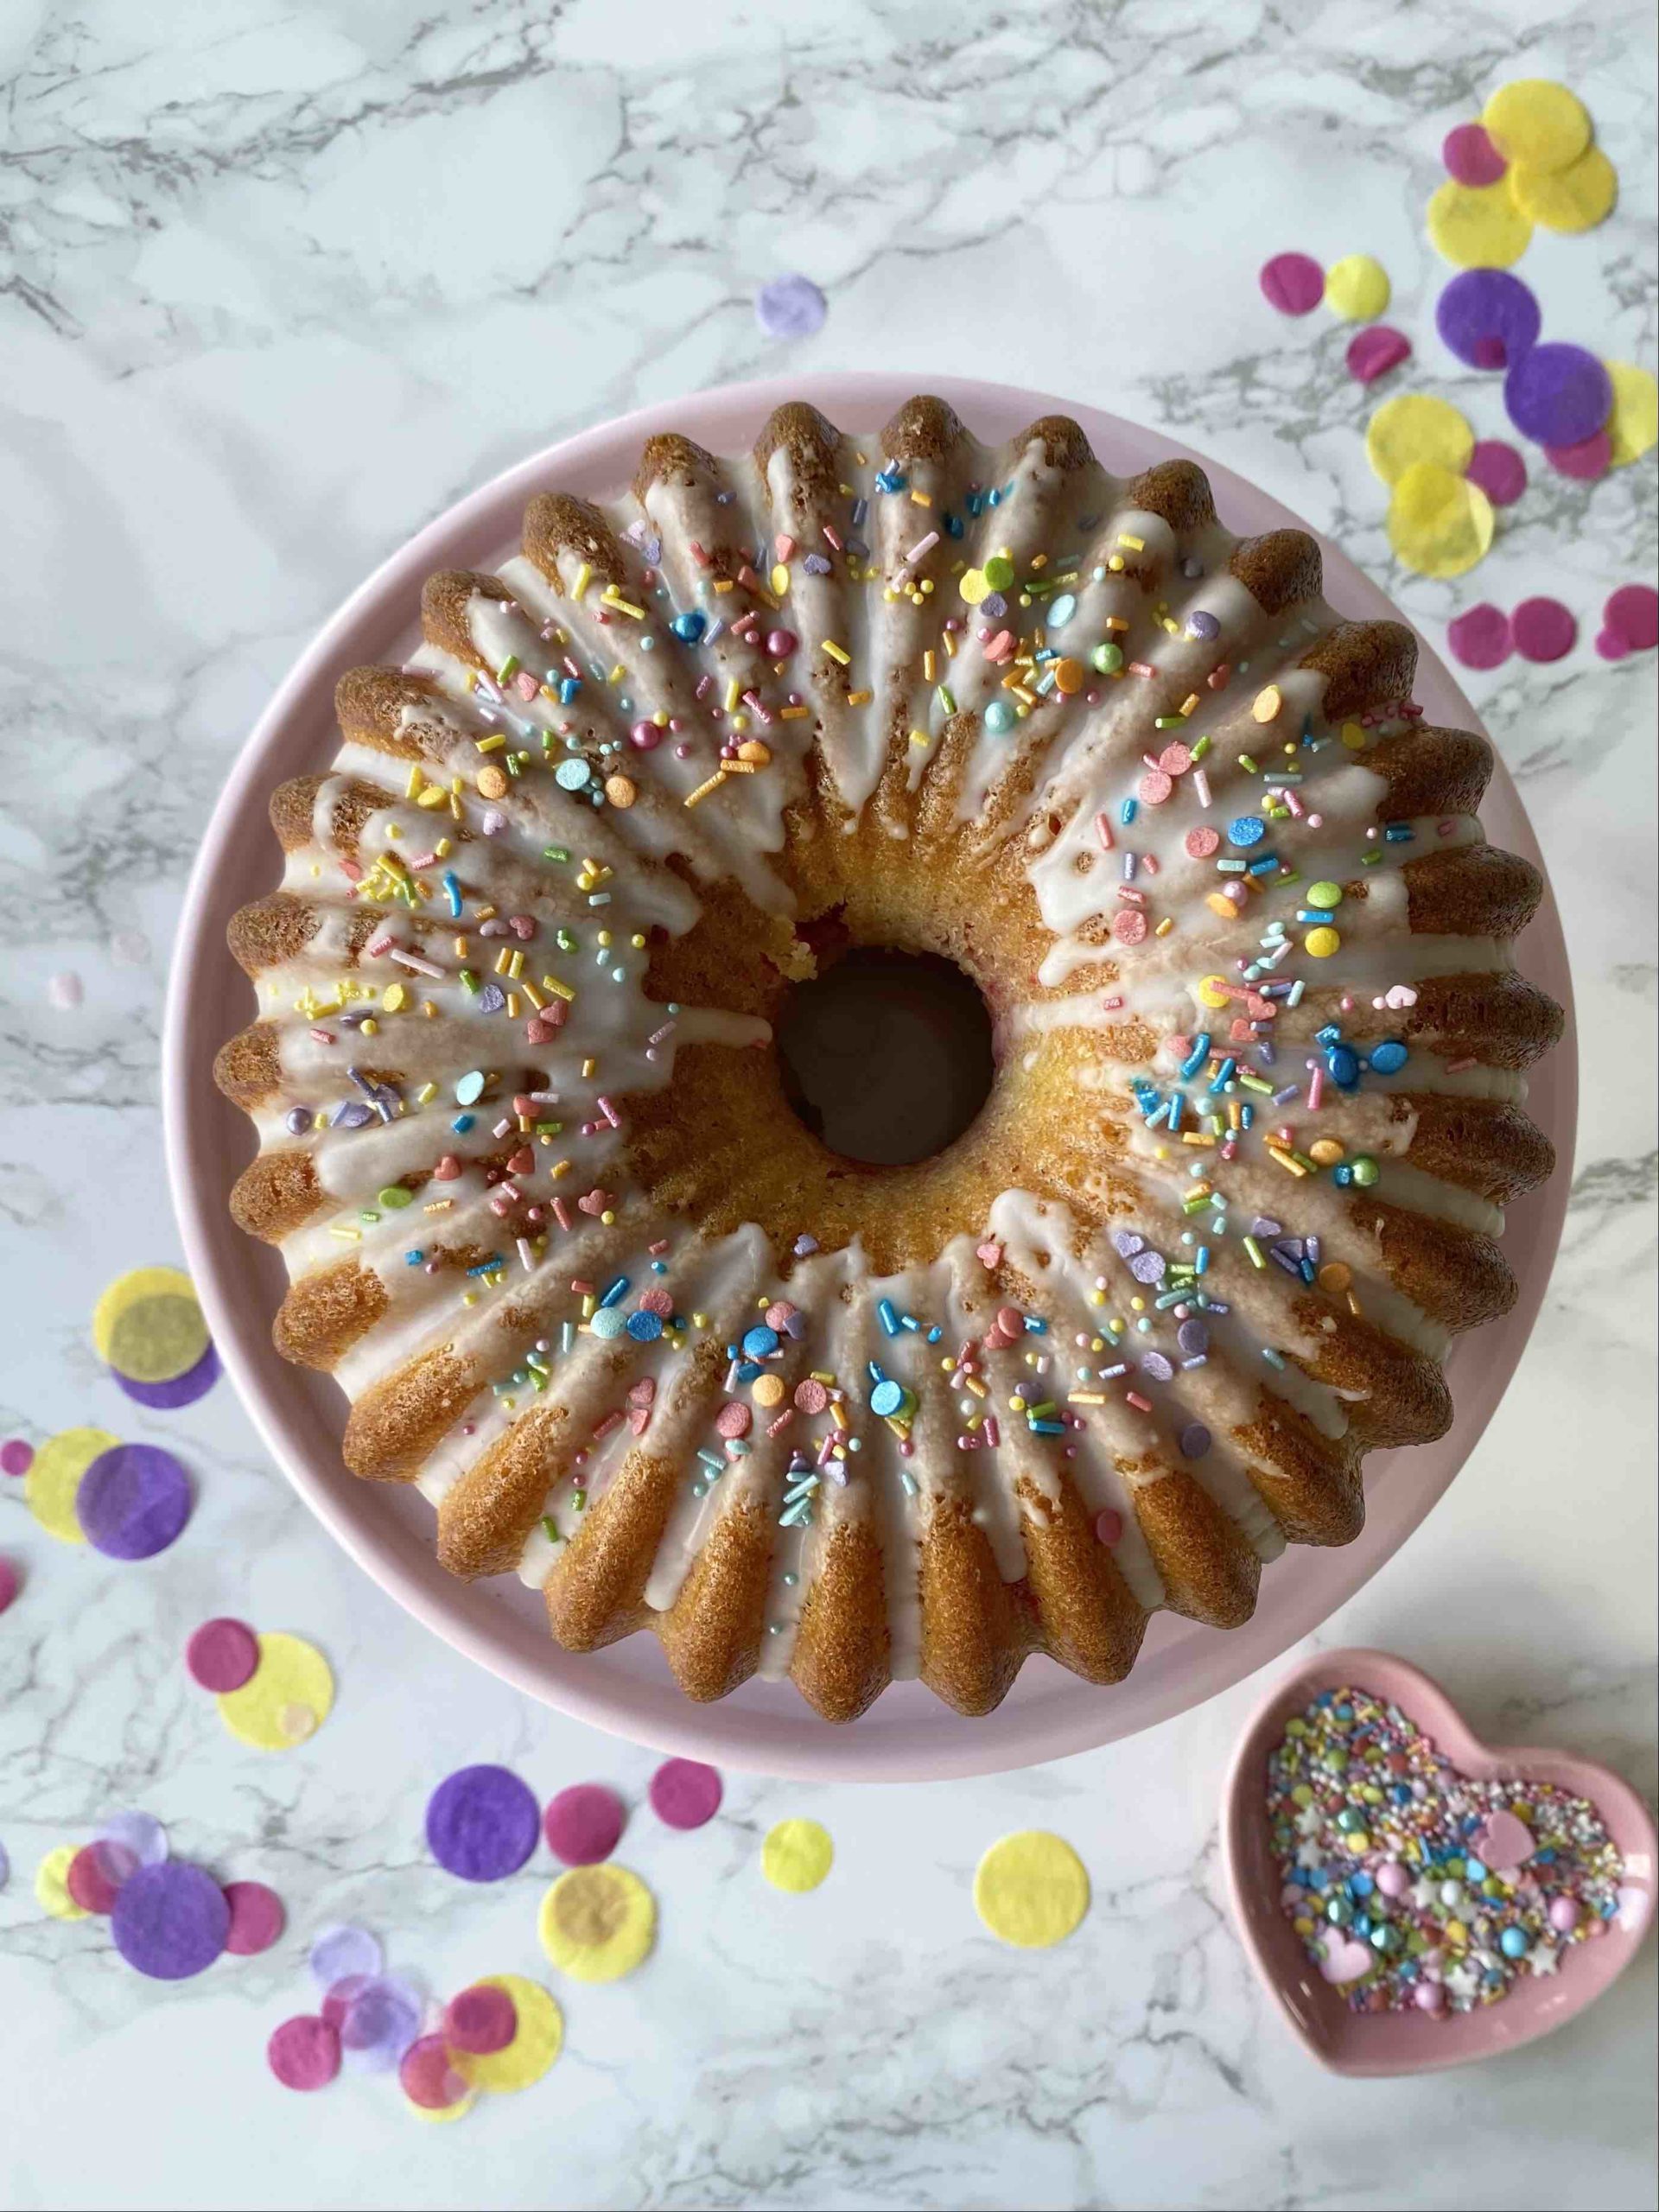 Der Surprise Cake mit verstecktem Regenbogen sieht von außen aus wie ein ganz normaler Geburtstagskuchen.